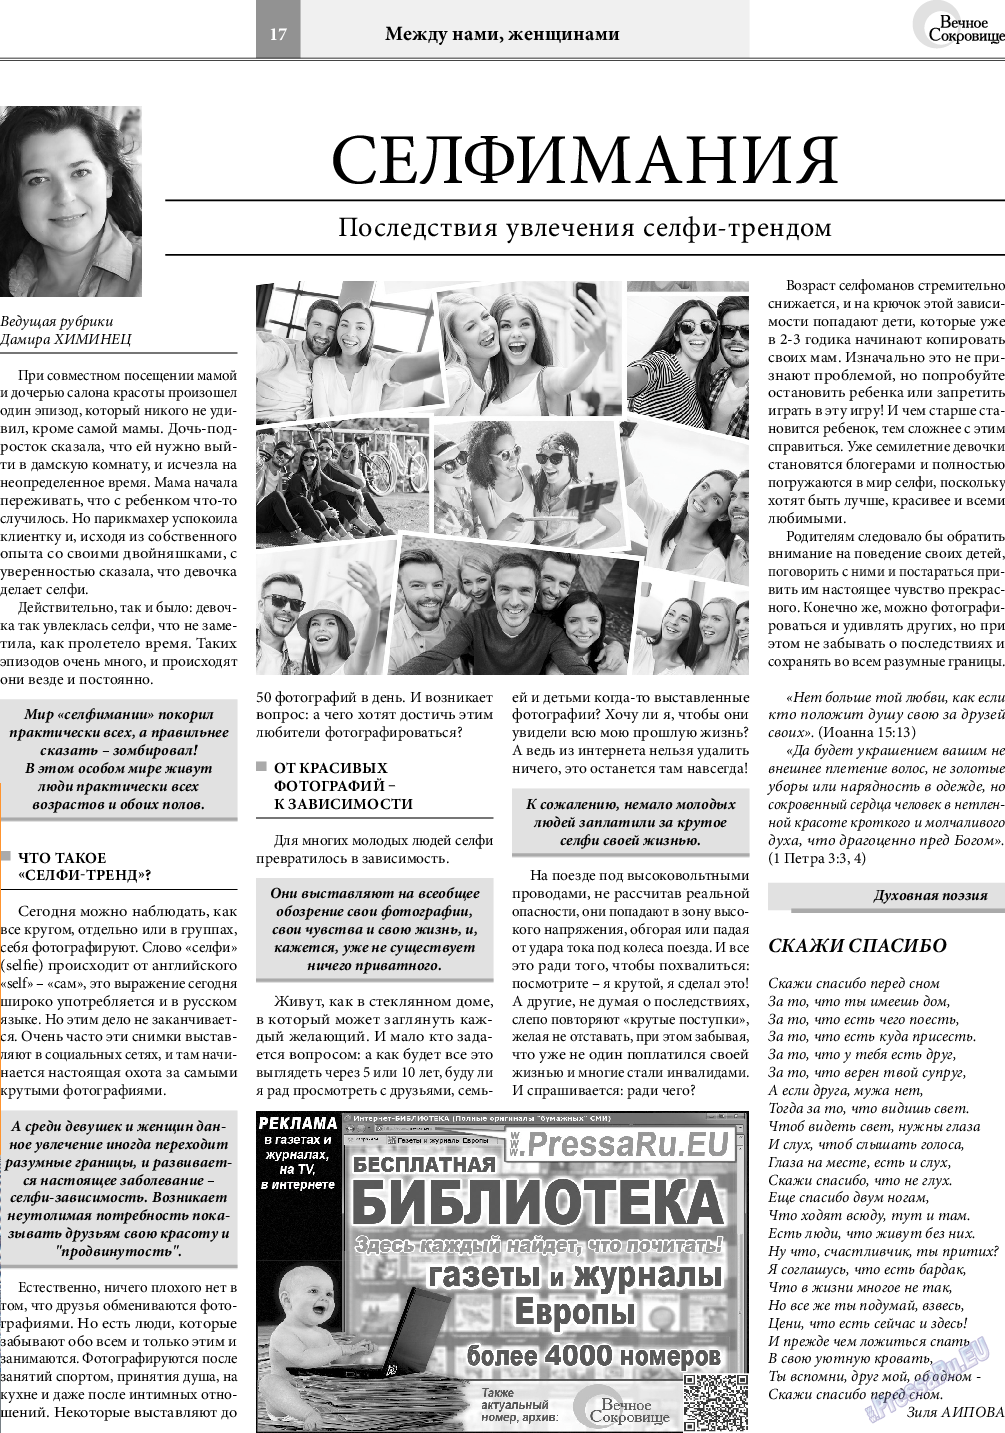 Вечное сокровище, газета. 2019 №4 стр.17